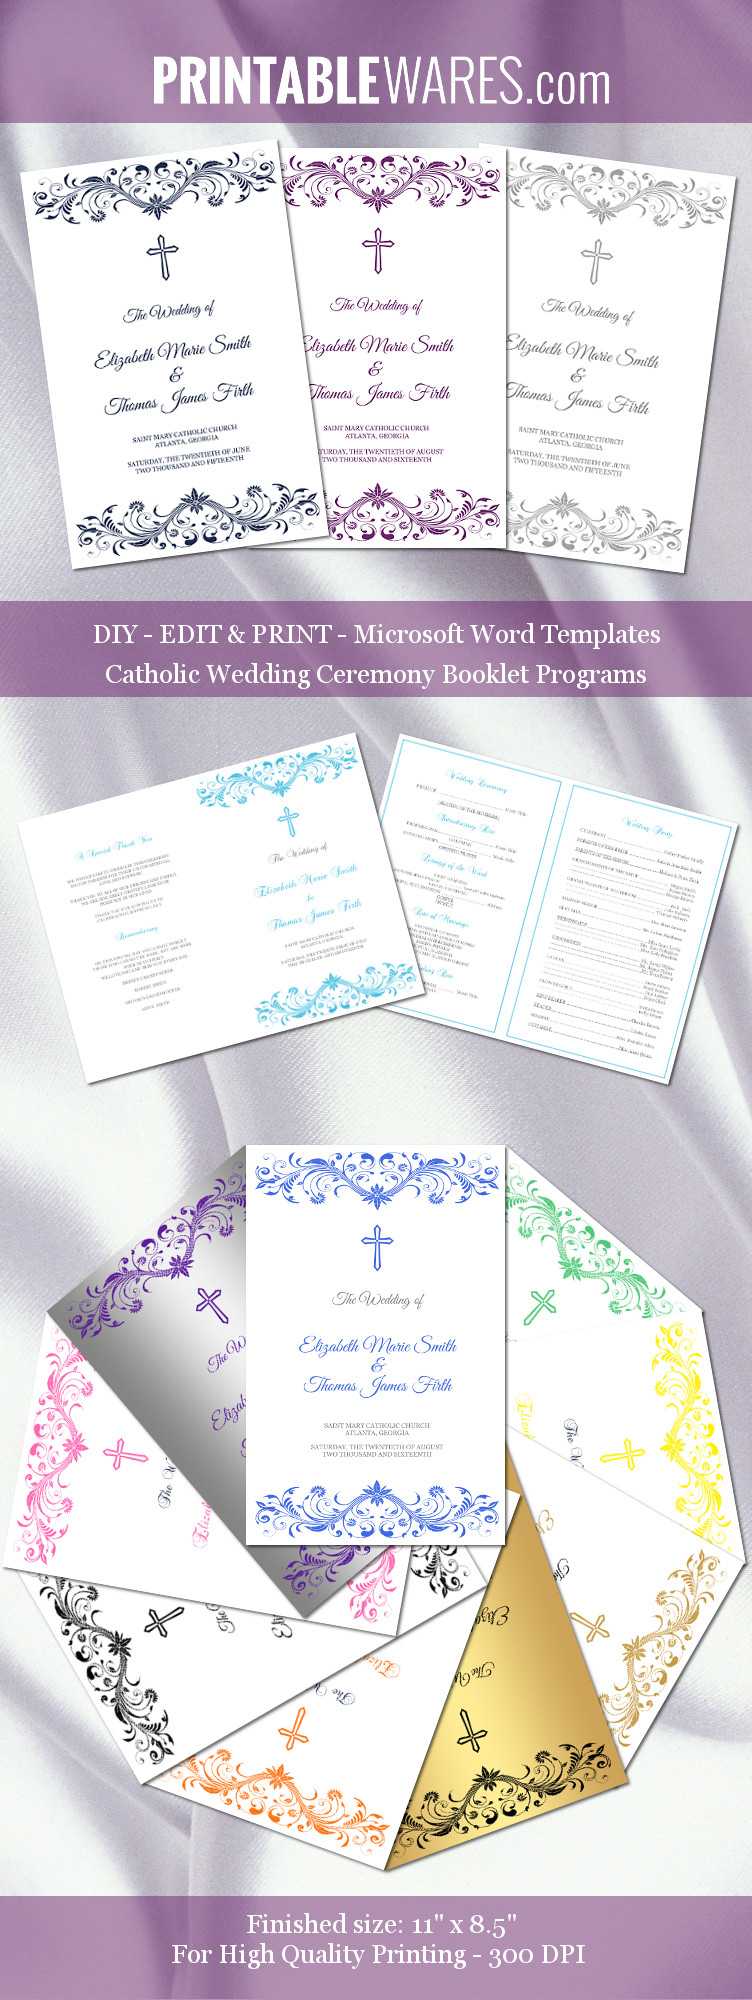 Catholic Wedding Program Templates, Word Booklet Within Church Program Templates Word